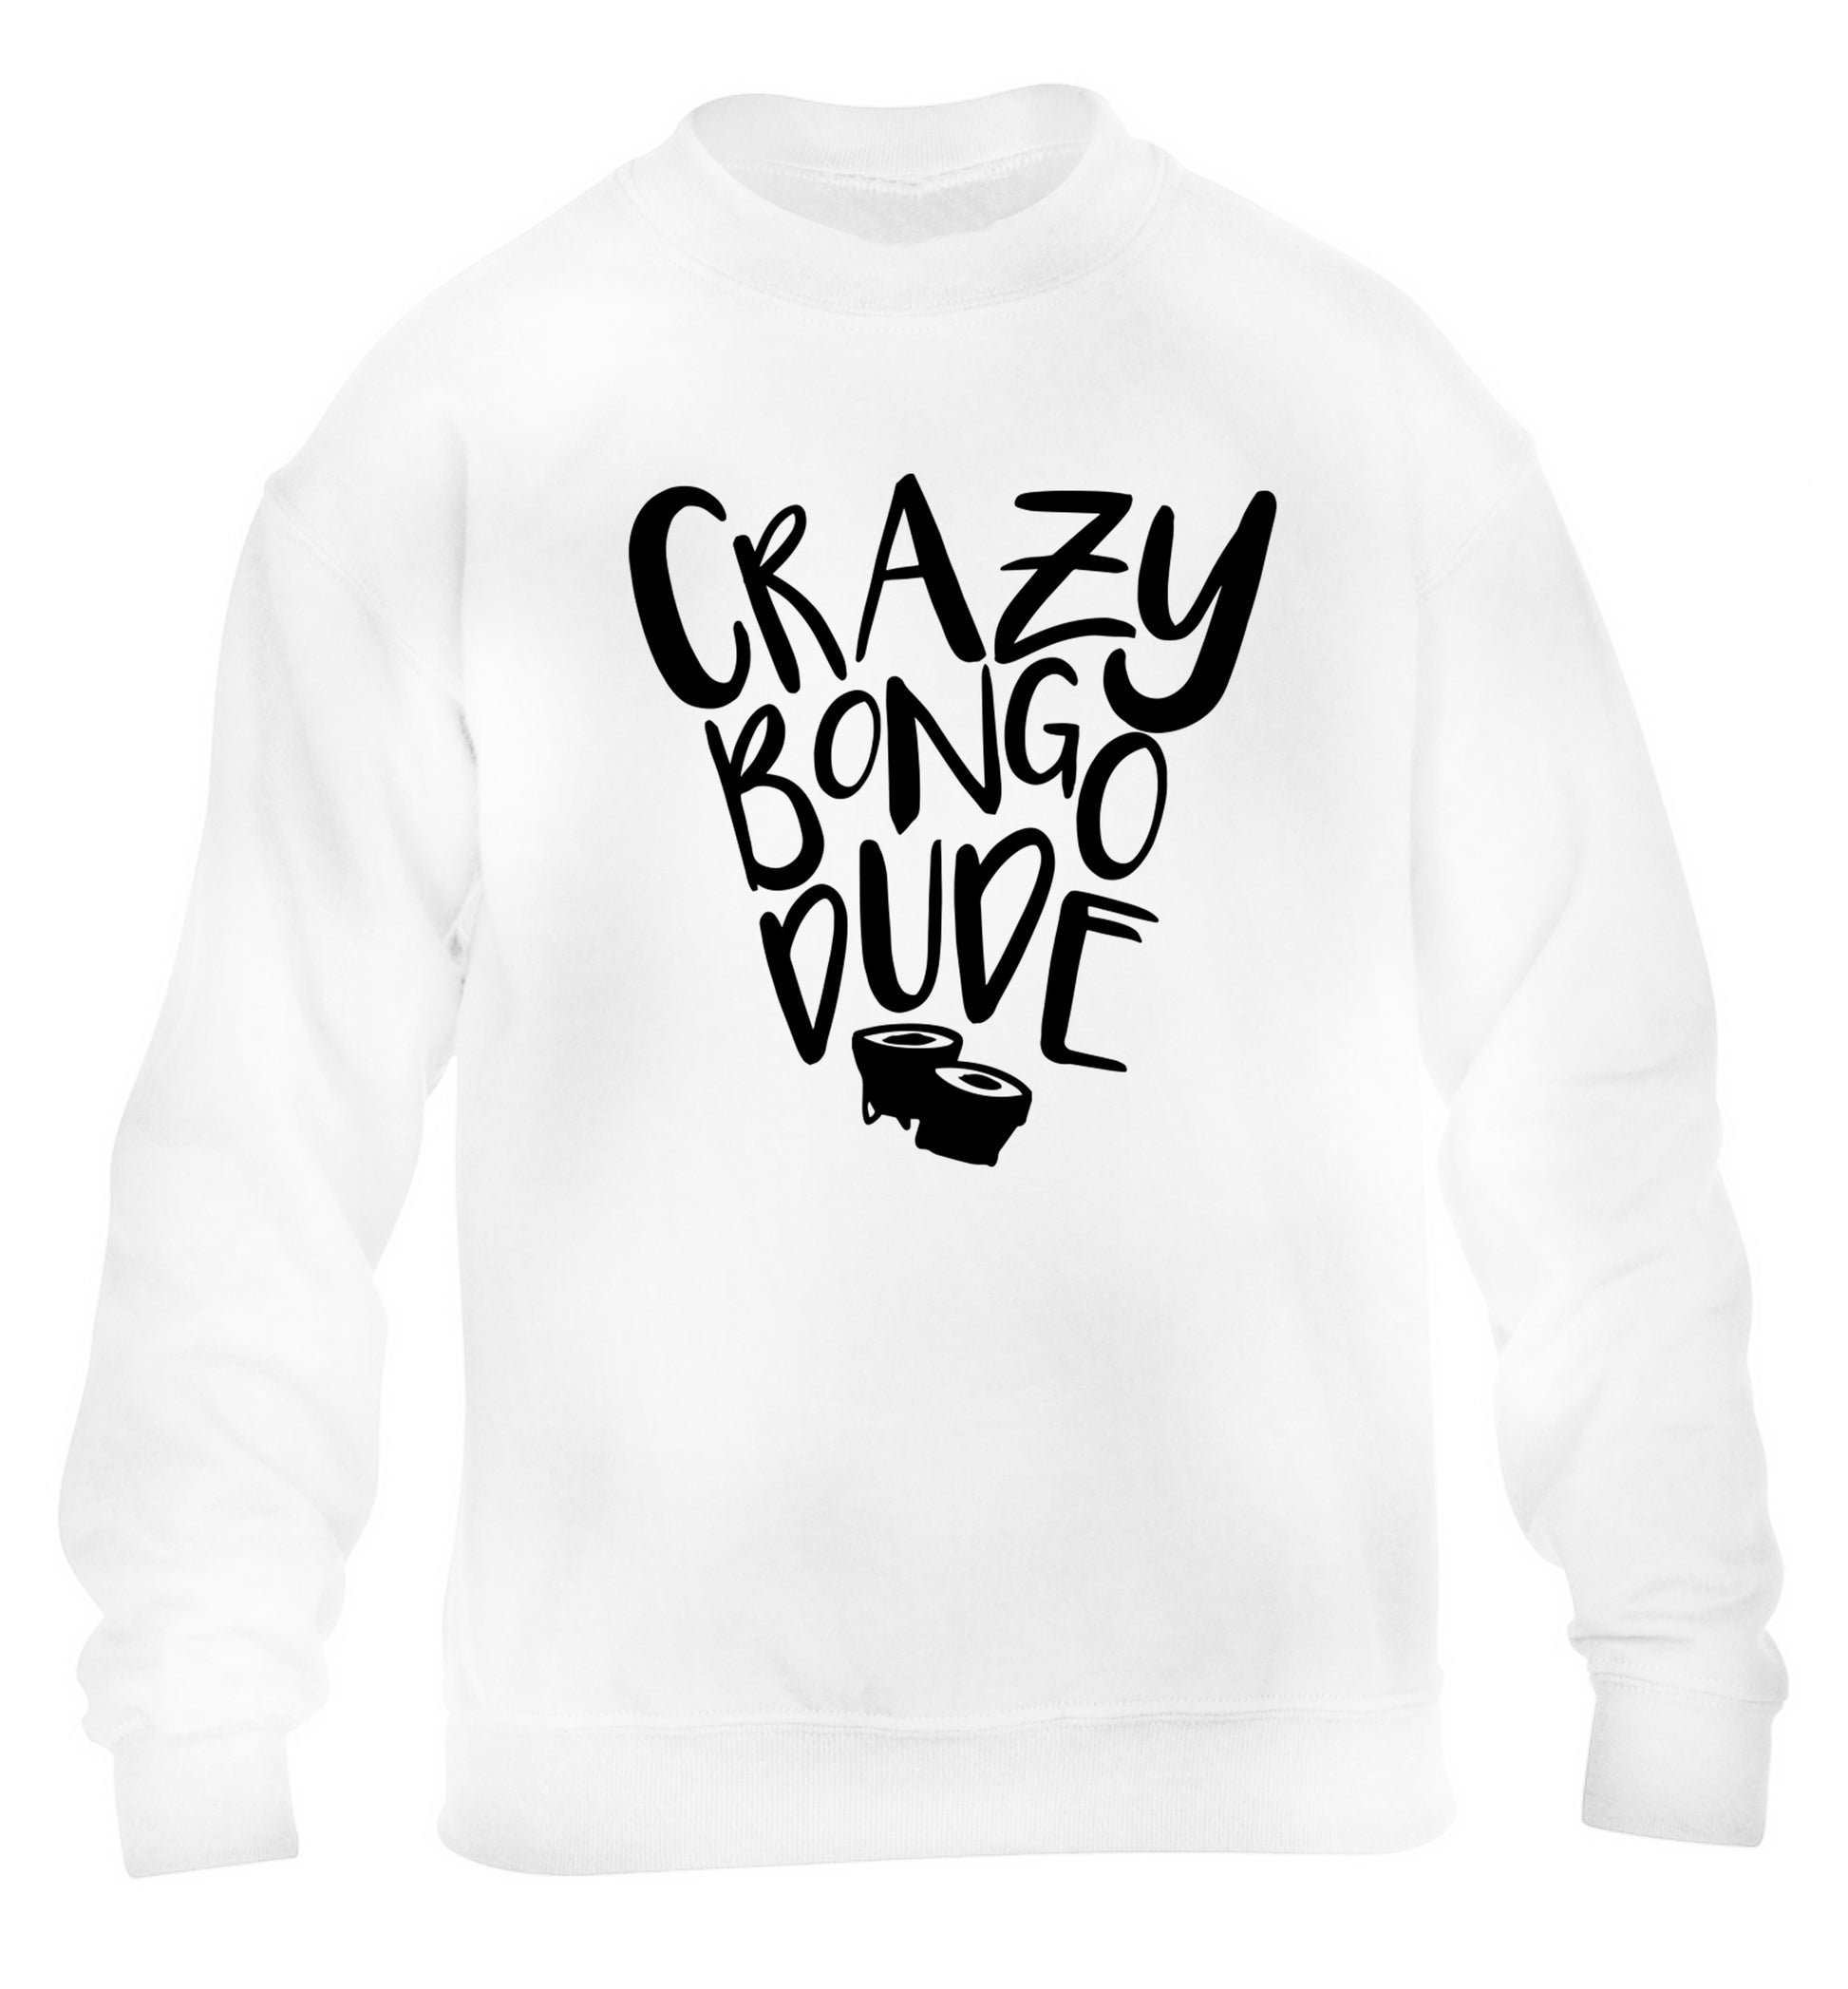 Crazy bongo dude children's white sweater 12-14 Years